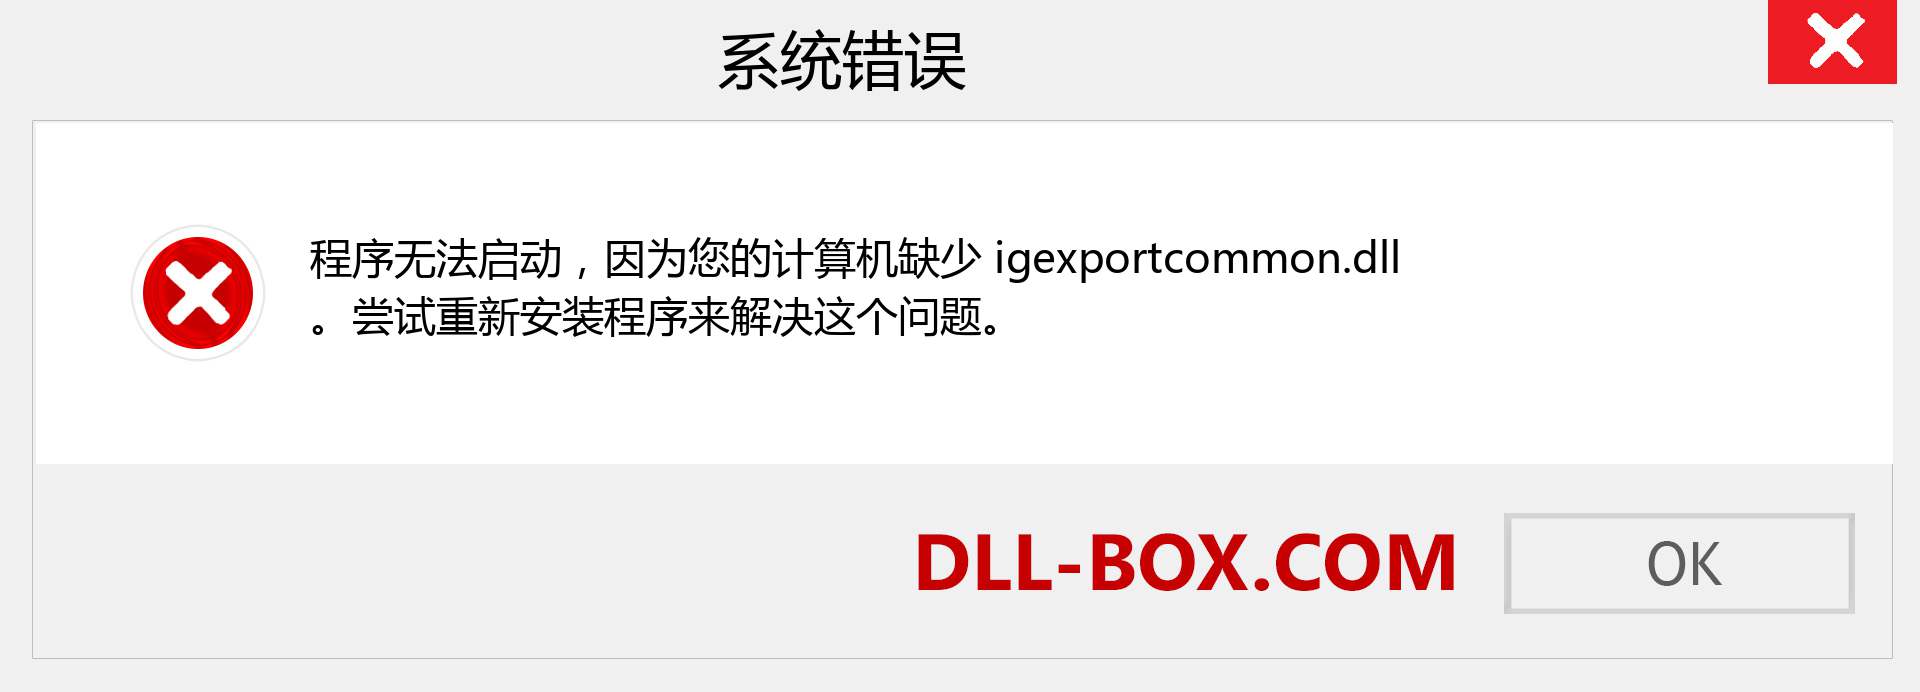 igexportcommon.dll 文件丢失？。 适用于 Windows 7、8、10 的下载 - 修复 Windows、照片、图像上的 igexportcommon dll 丢失错误